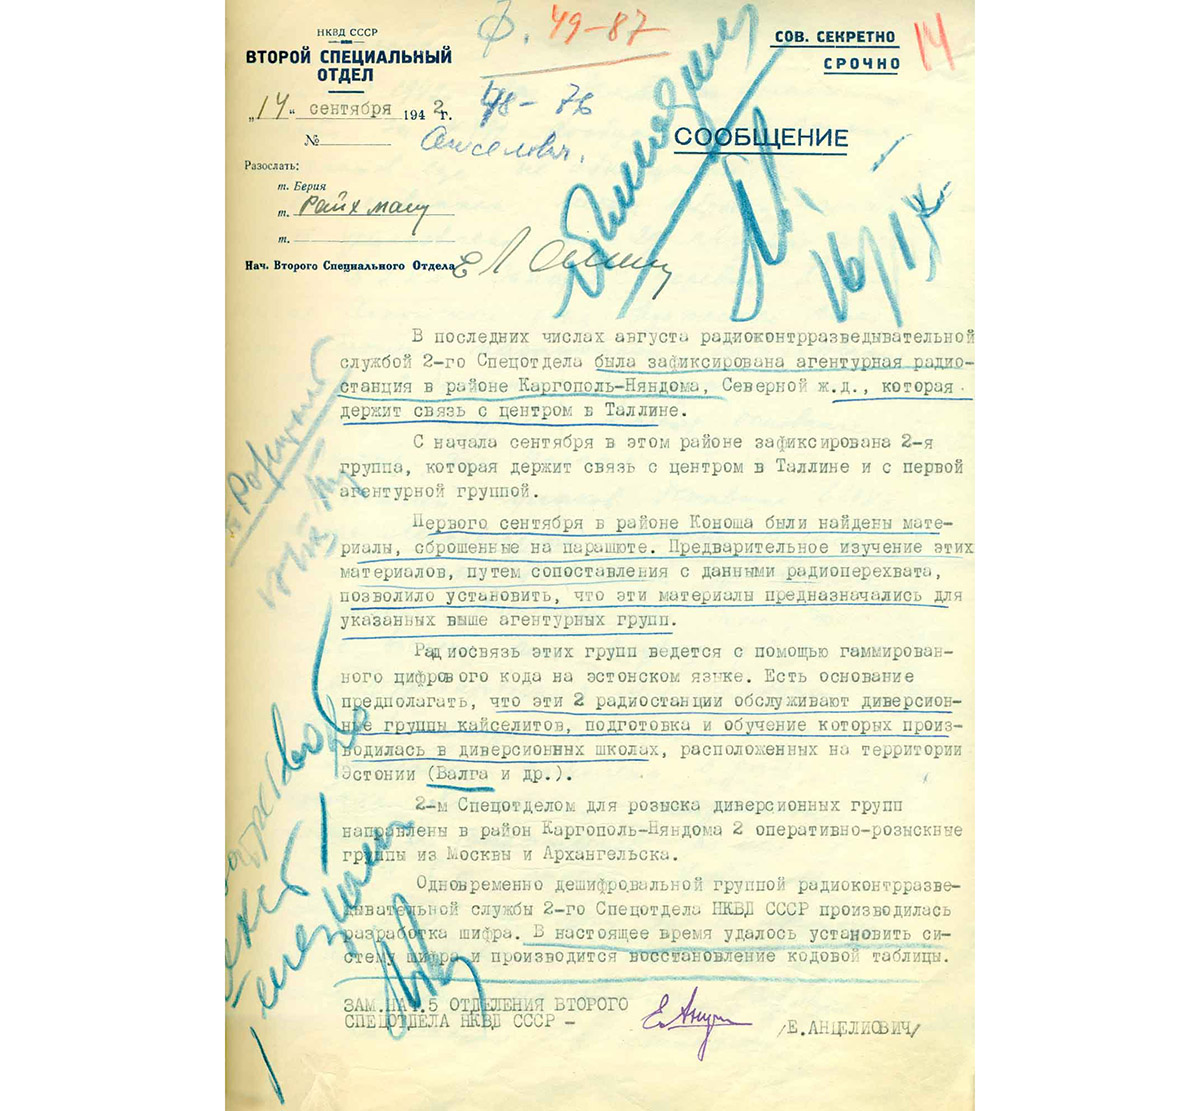 Сообщение зам. нач. 5 отделения второго спецотдела НКВД СССР Е. Анцеловича, направленное Л. Берии 14 сентября 1942 года